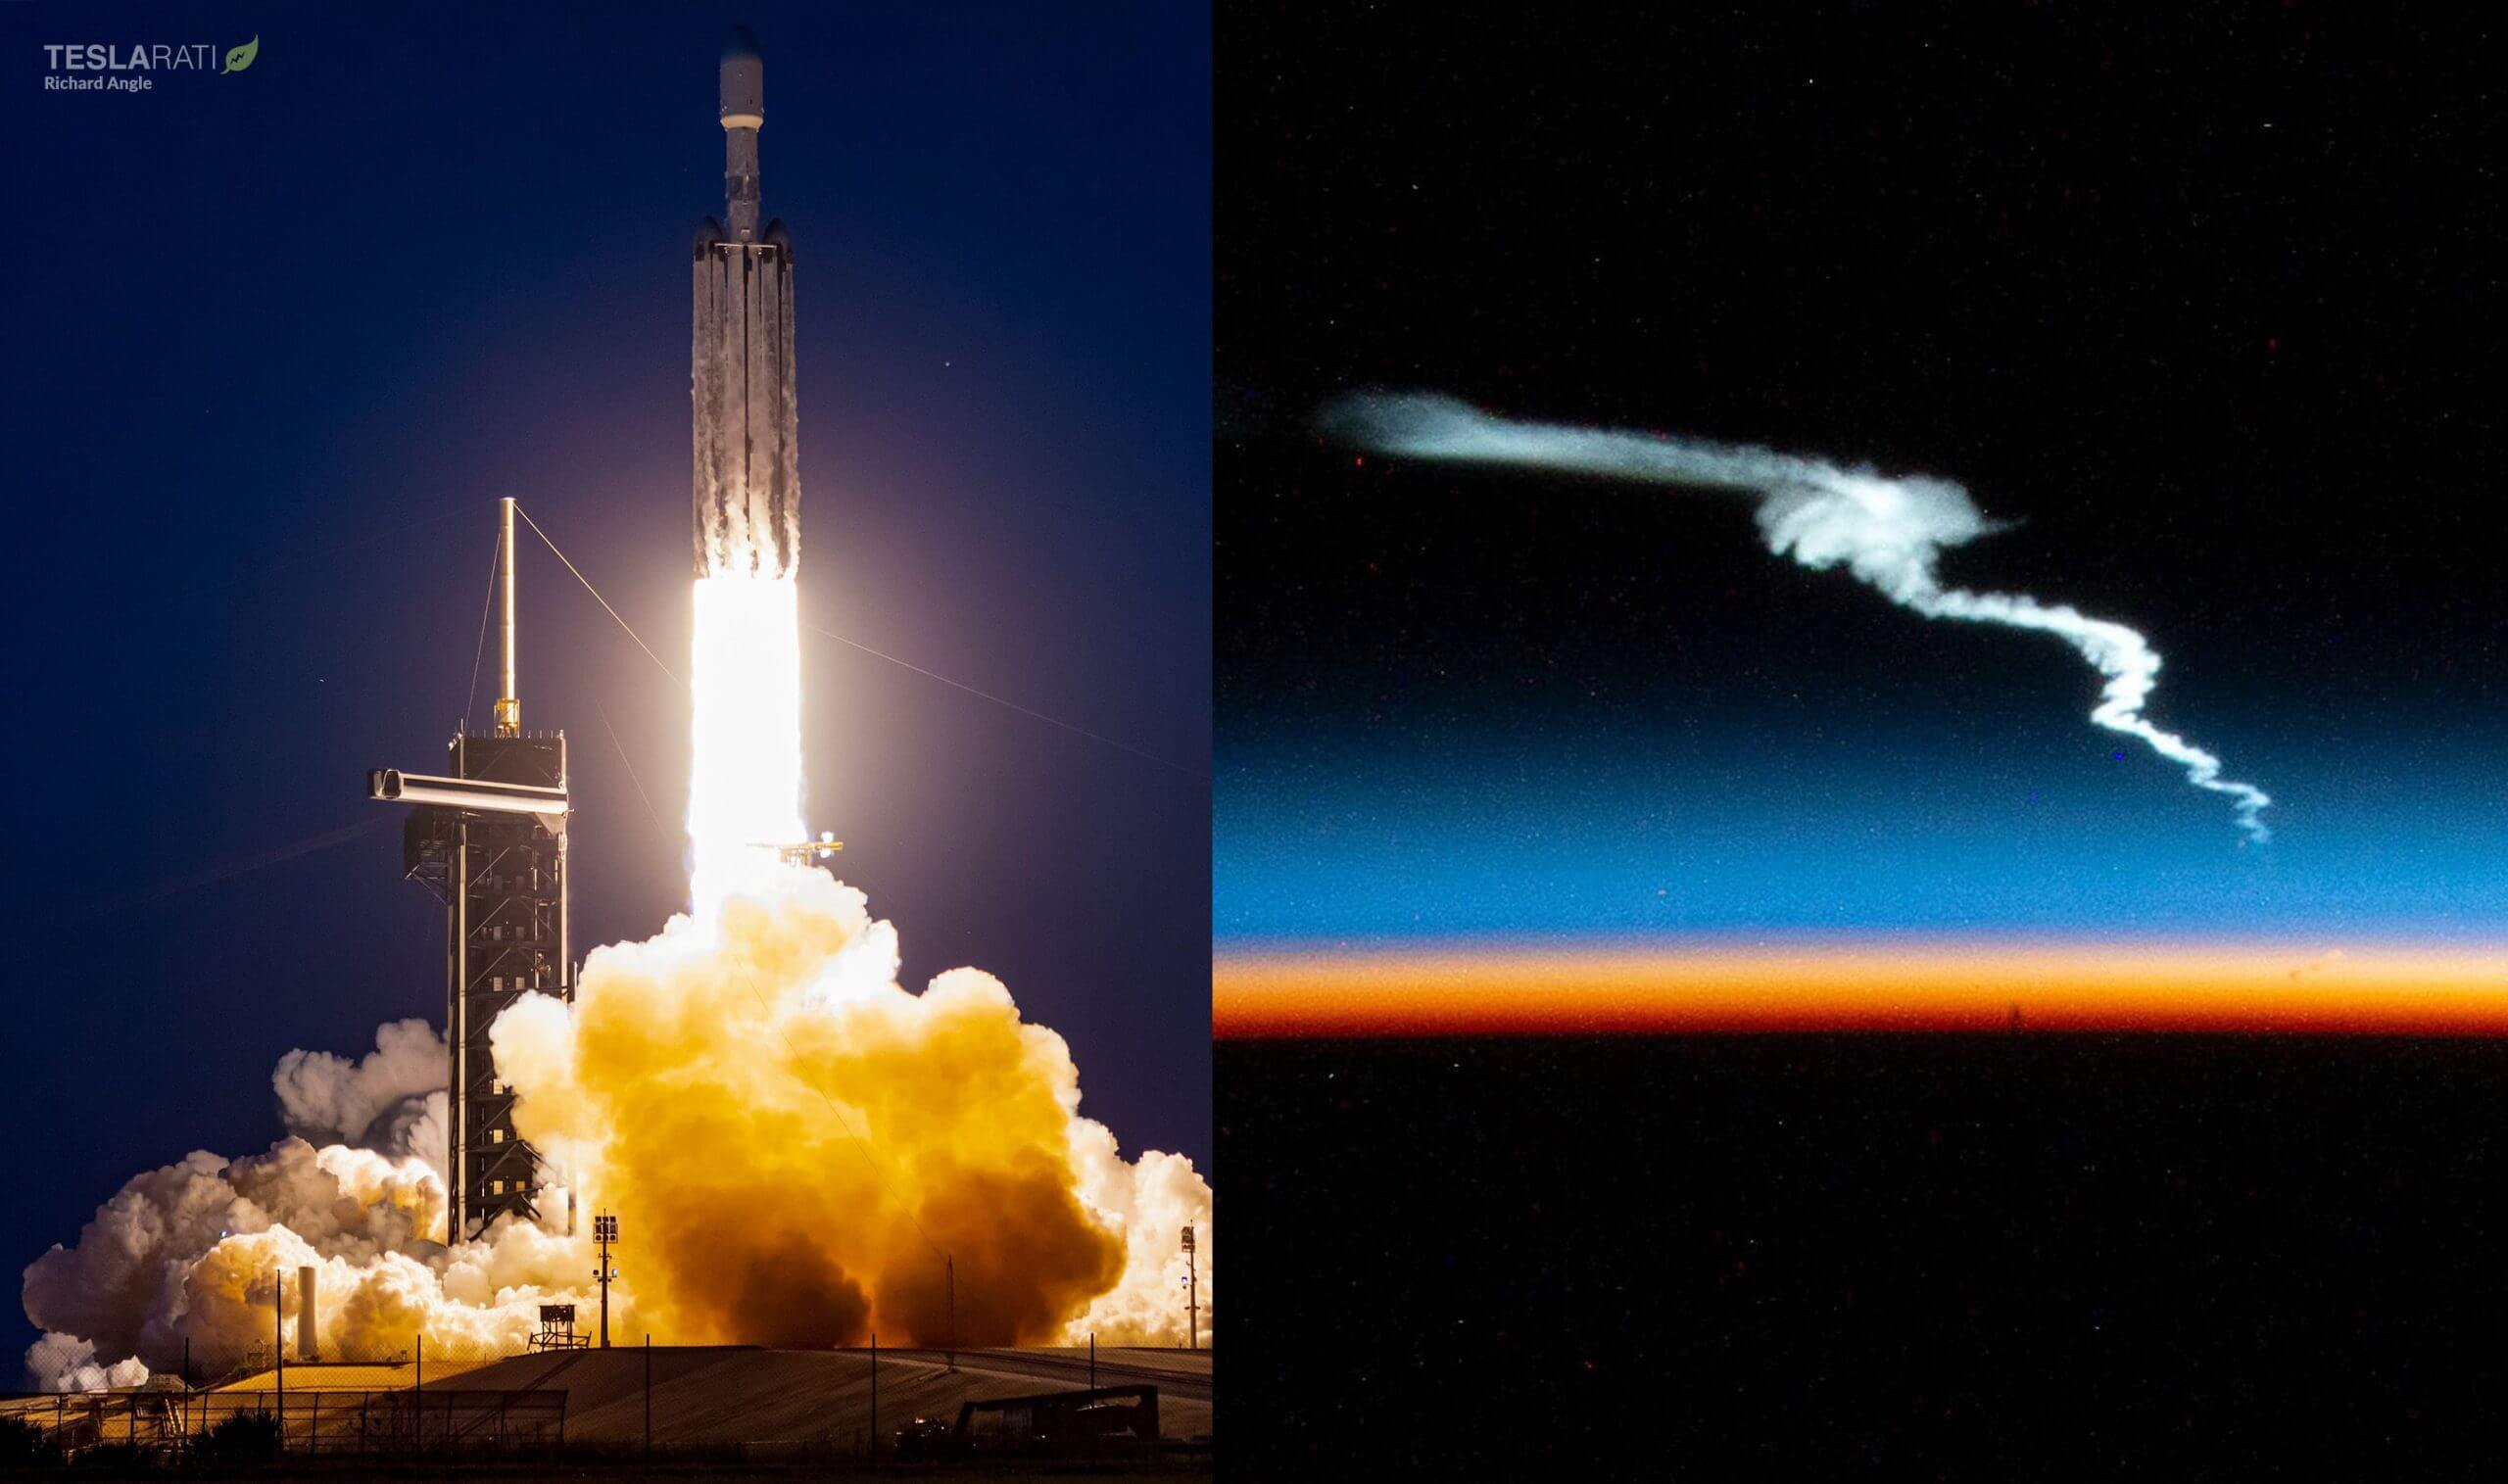 Der neueste Falcon Heavy-Start von SpaceX, aufgenommen aus einer seltenen Perspektive